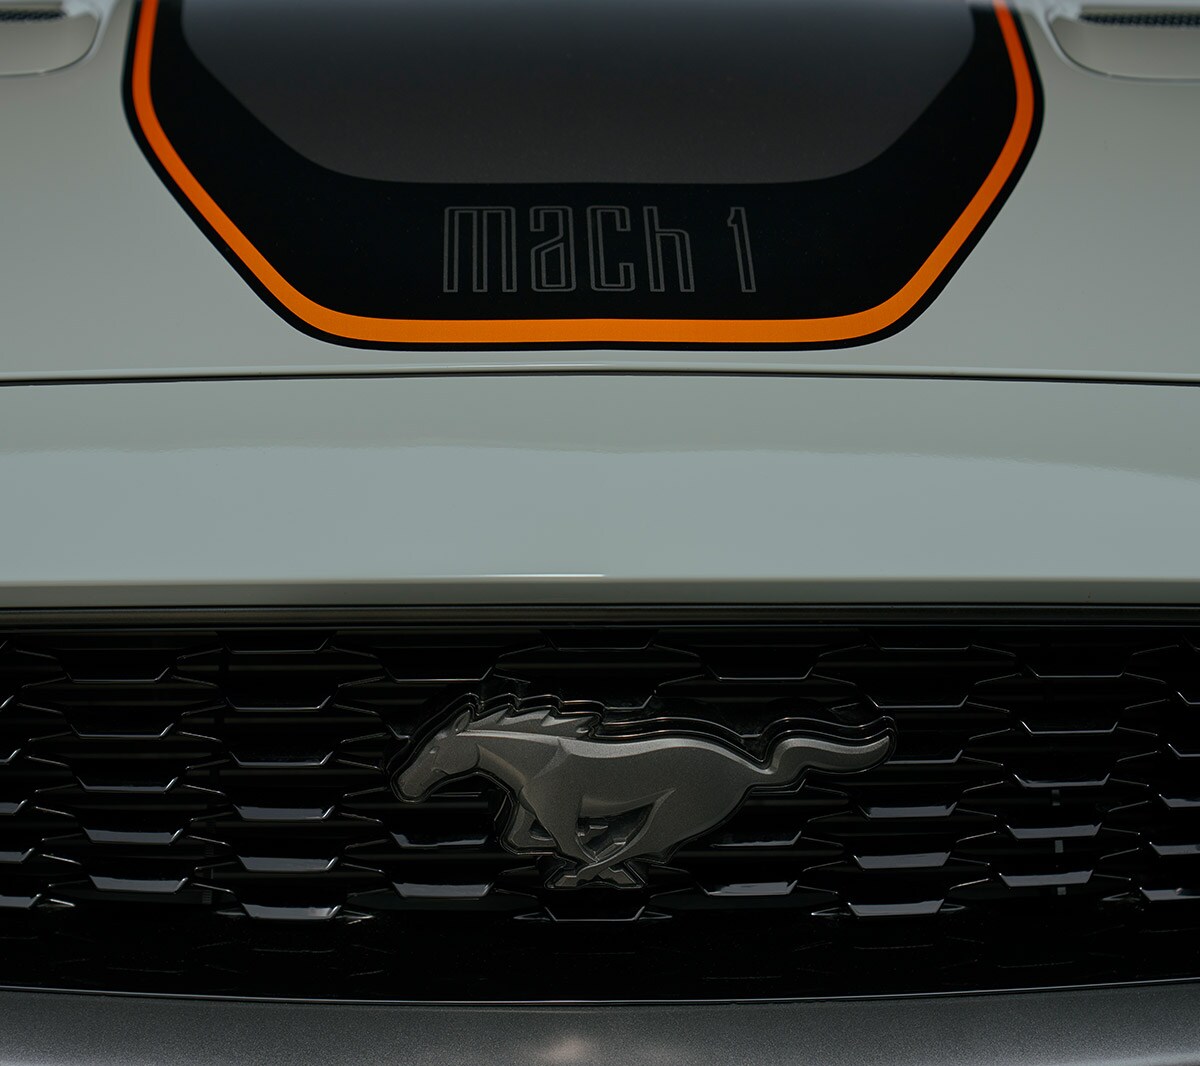 Ford Mustang Mach 1 bianca. Vista dettagliata del logo con il pony sulla calandra